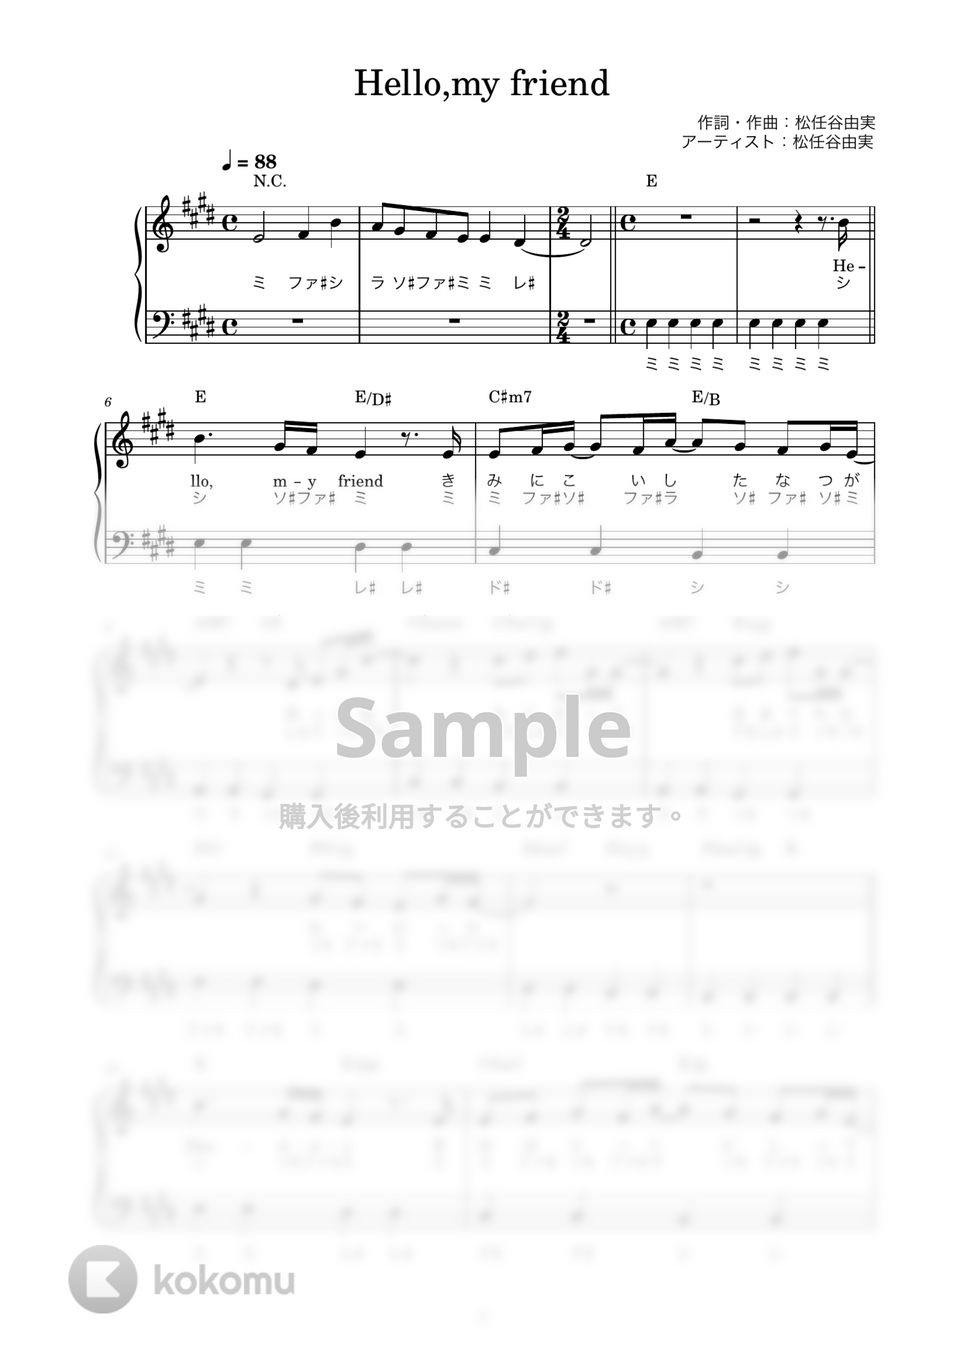 松任谷由実 - Hello,my friend (かんたん / 歌詞付き / ドレミ付き / 初心者) by piano.tokyo